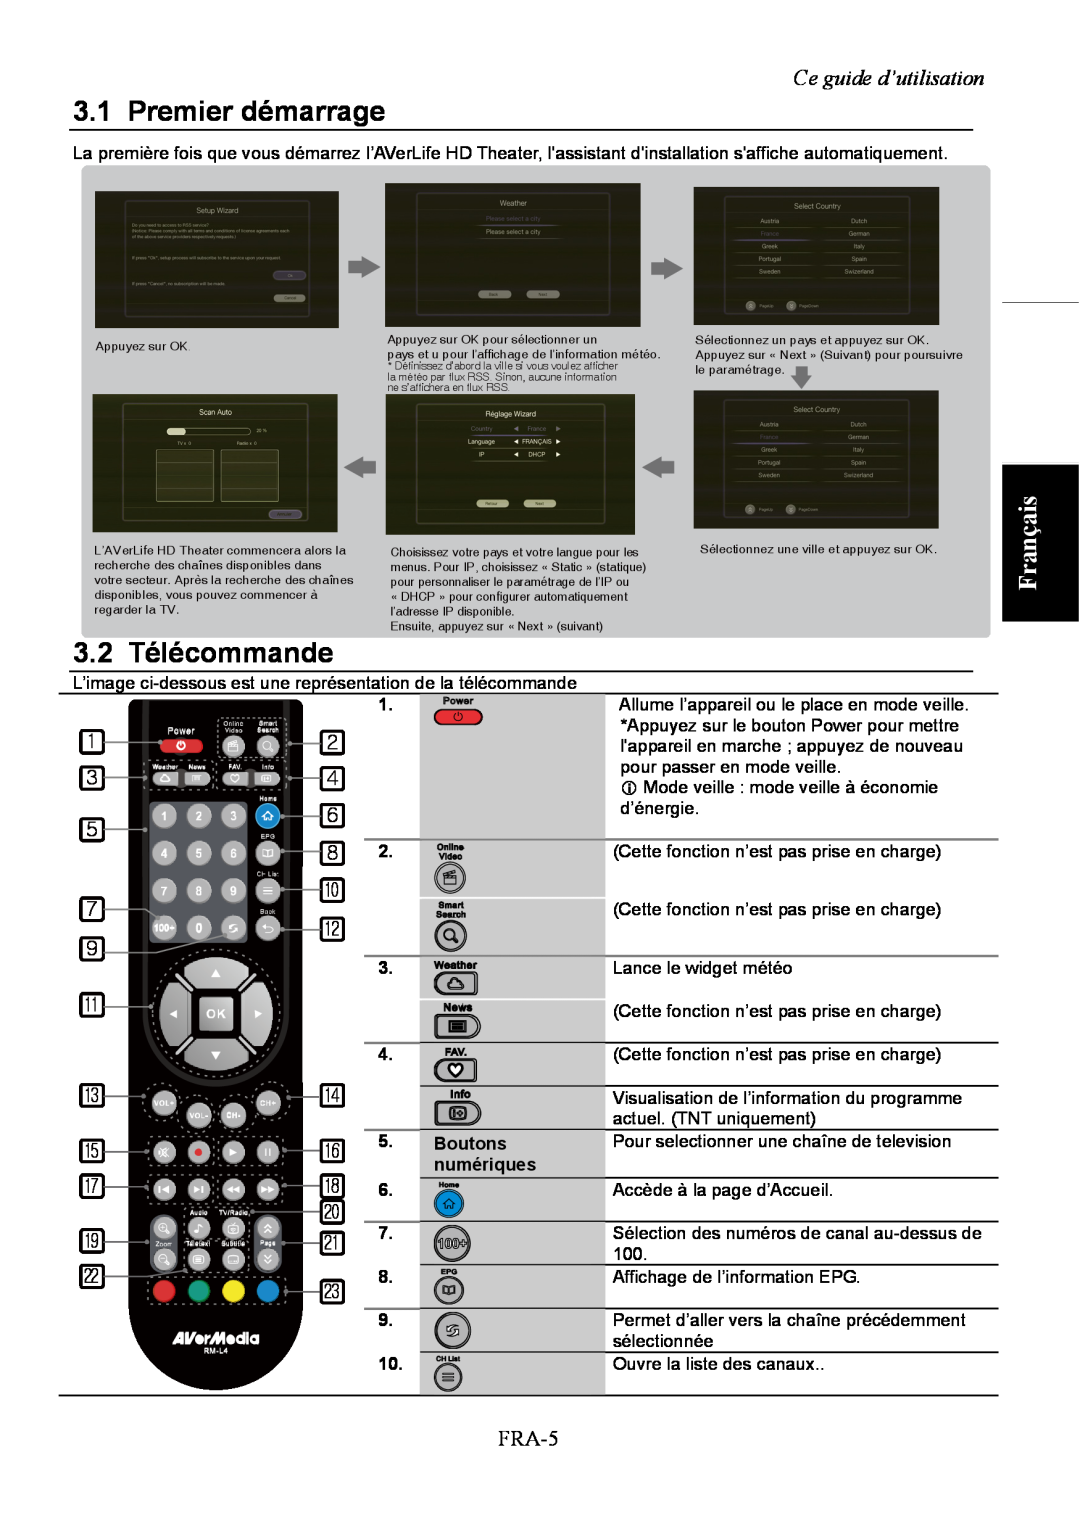 AVerMedia Technologies A211 user manual Premier démarrage, 3.2 Télécommande, Français, Ce guide d’utilisation, FRA-5 